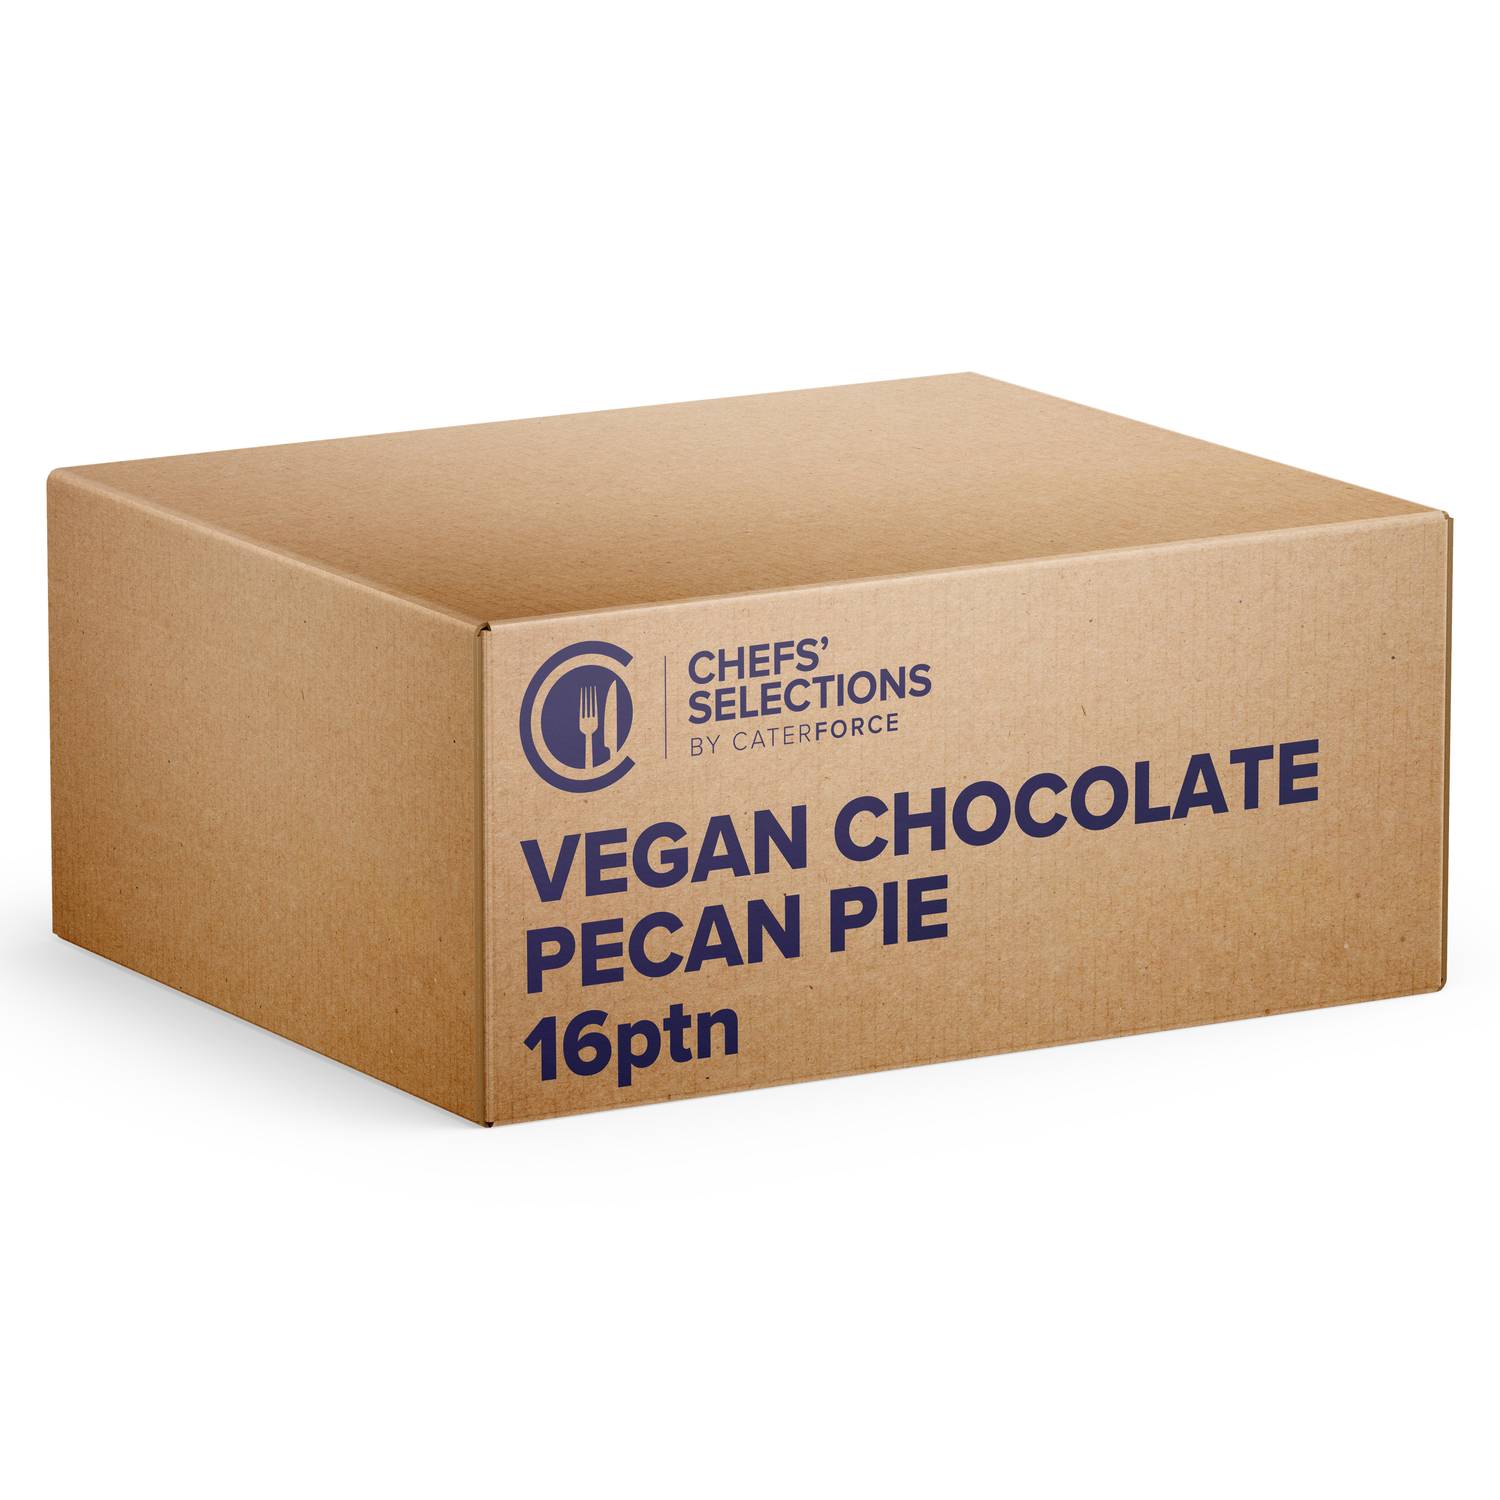 Chefs’ Selections Vegan Chocolate Pecan Pie (1 x 16p/ptn)